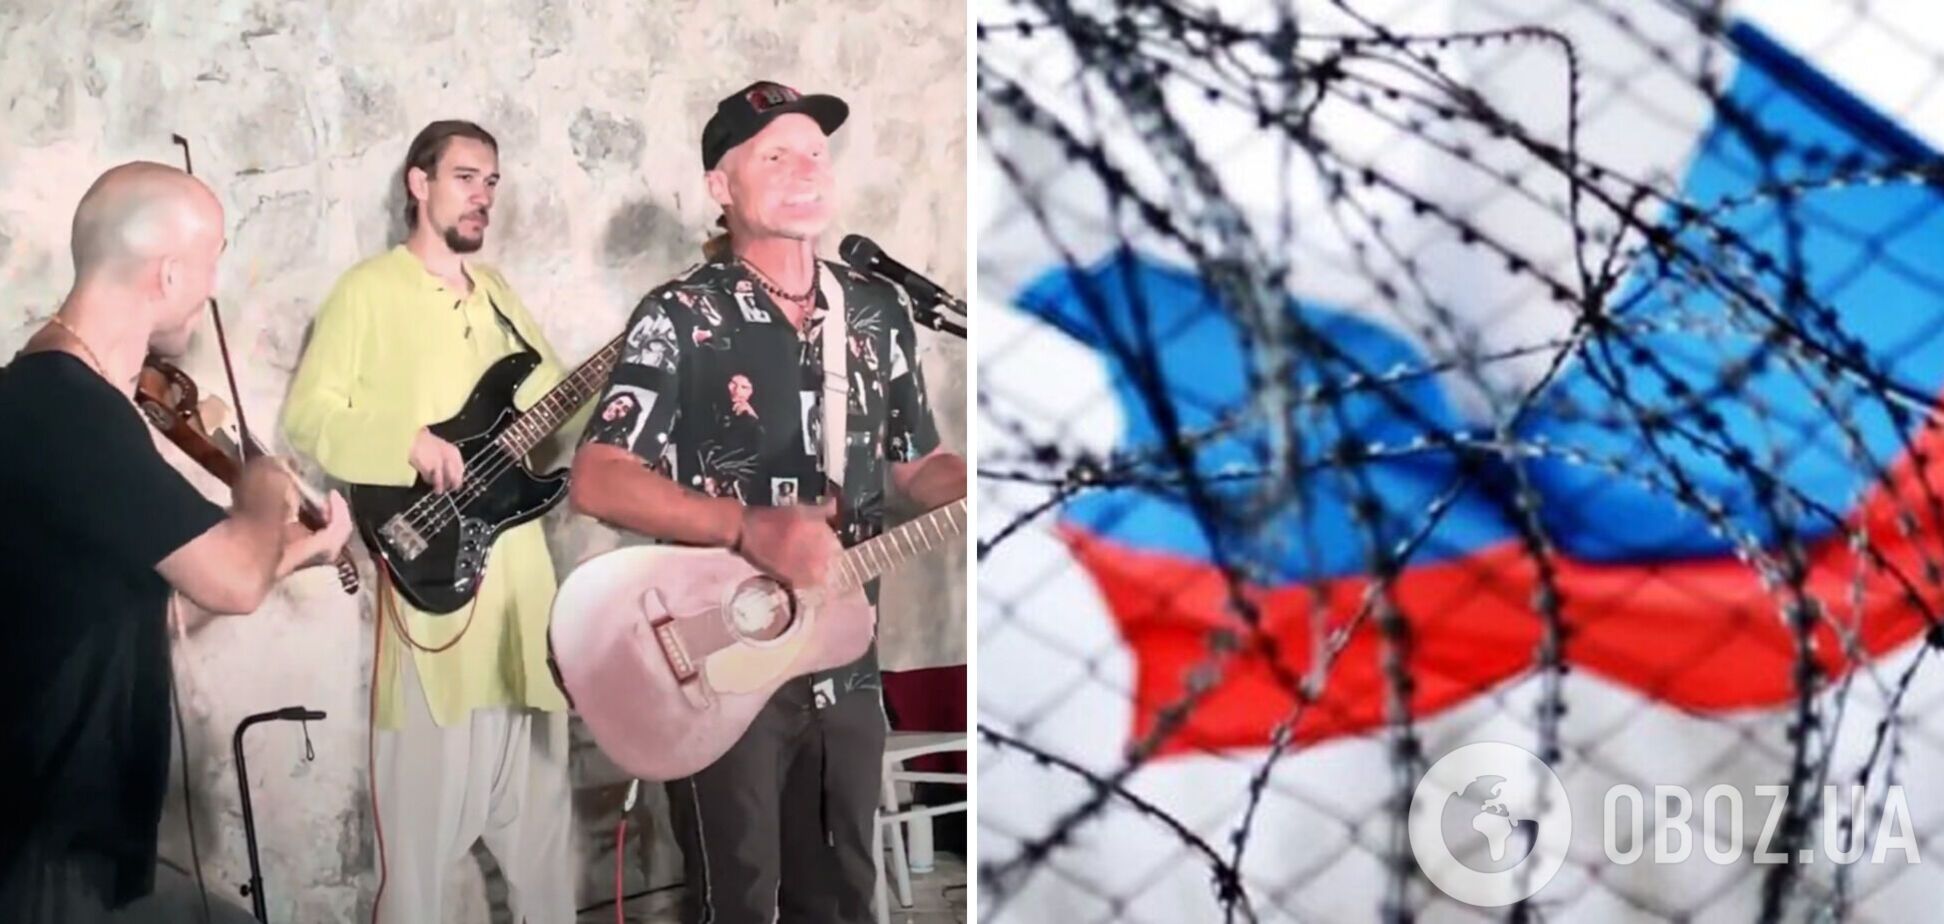 'Без политических разногласий с российскими беженцами создал ауру объединения': Скрипка попал в пророссийский скандал и нарвался на хейт